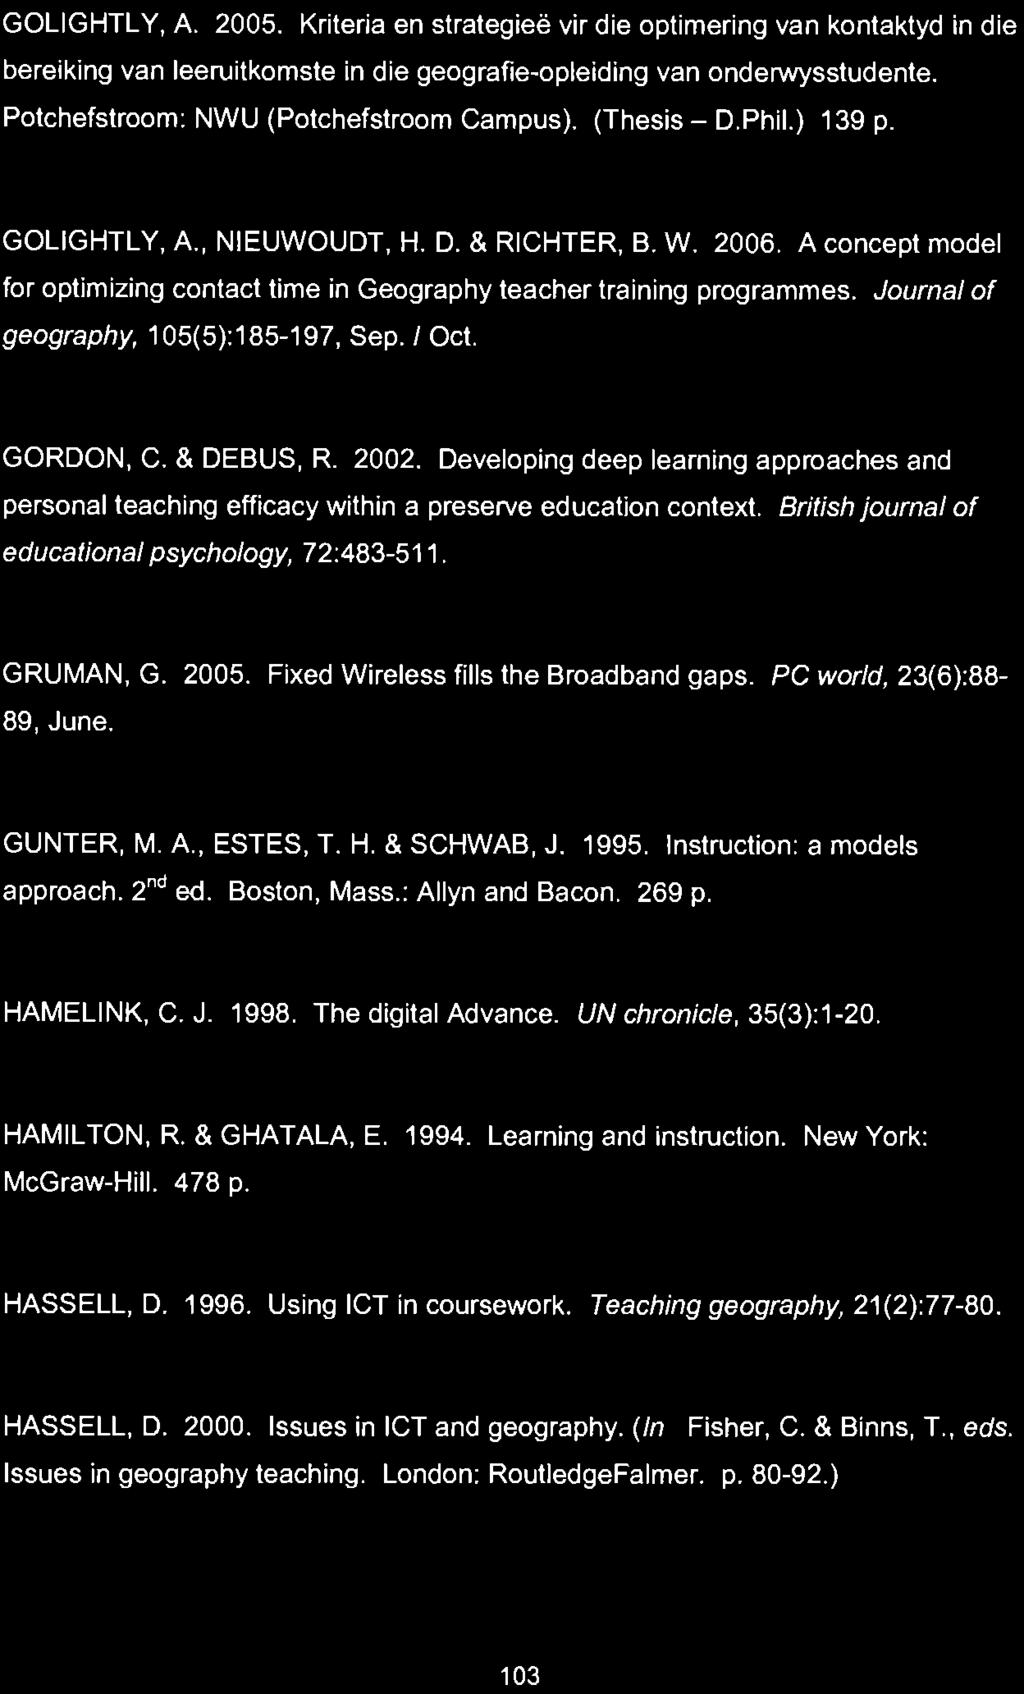 GOLIGHTLY, A. 2005. Kriterla en strategiee vir die optimering van kontaktyd in die berelking van leeruitkomste in die geografie-opleiding van onderwysstudente.